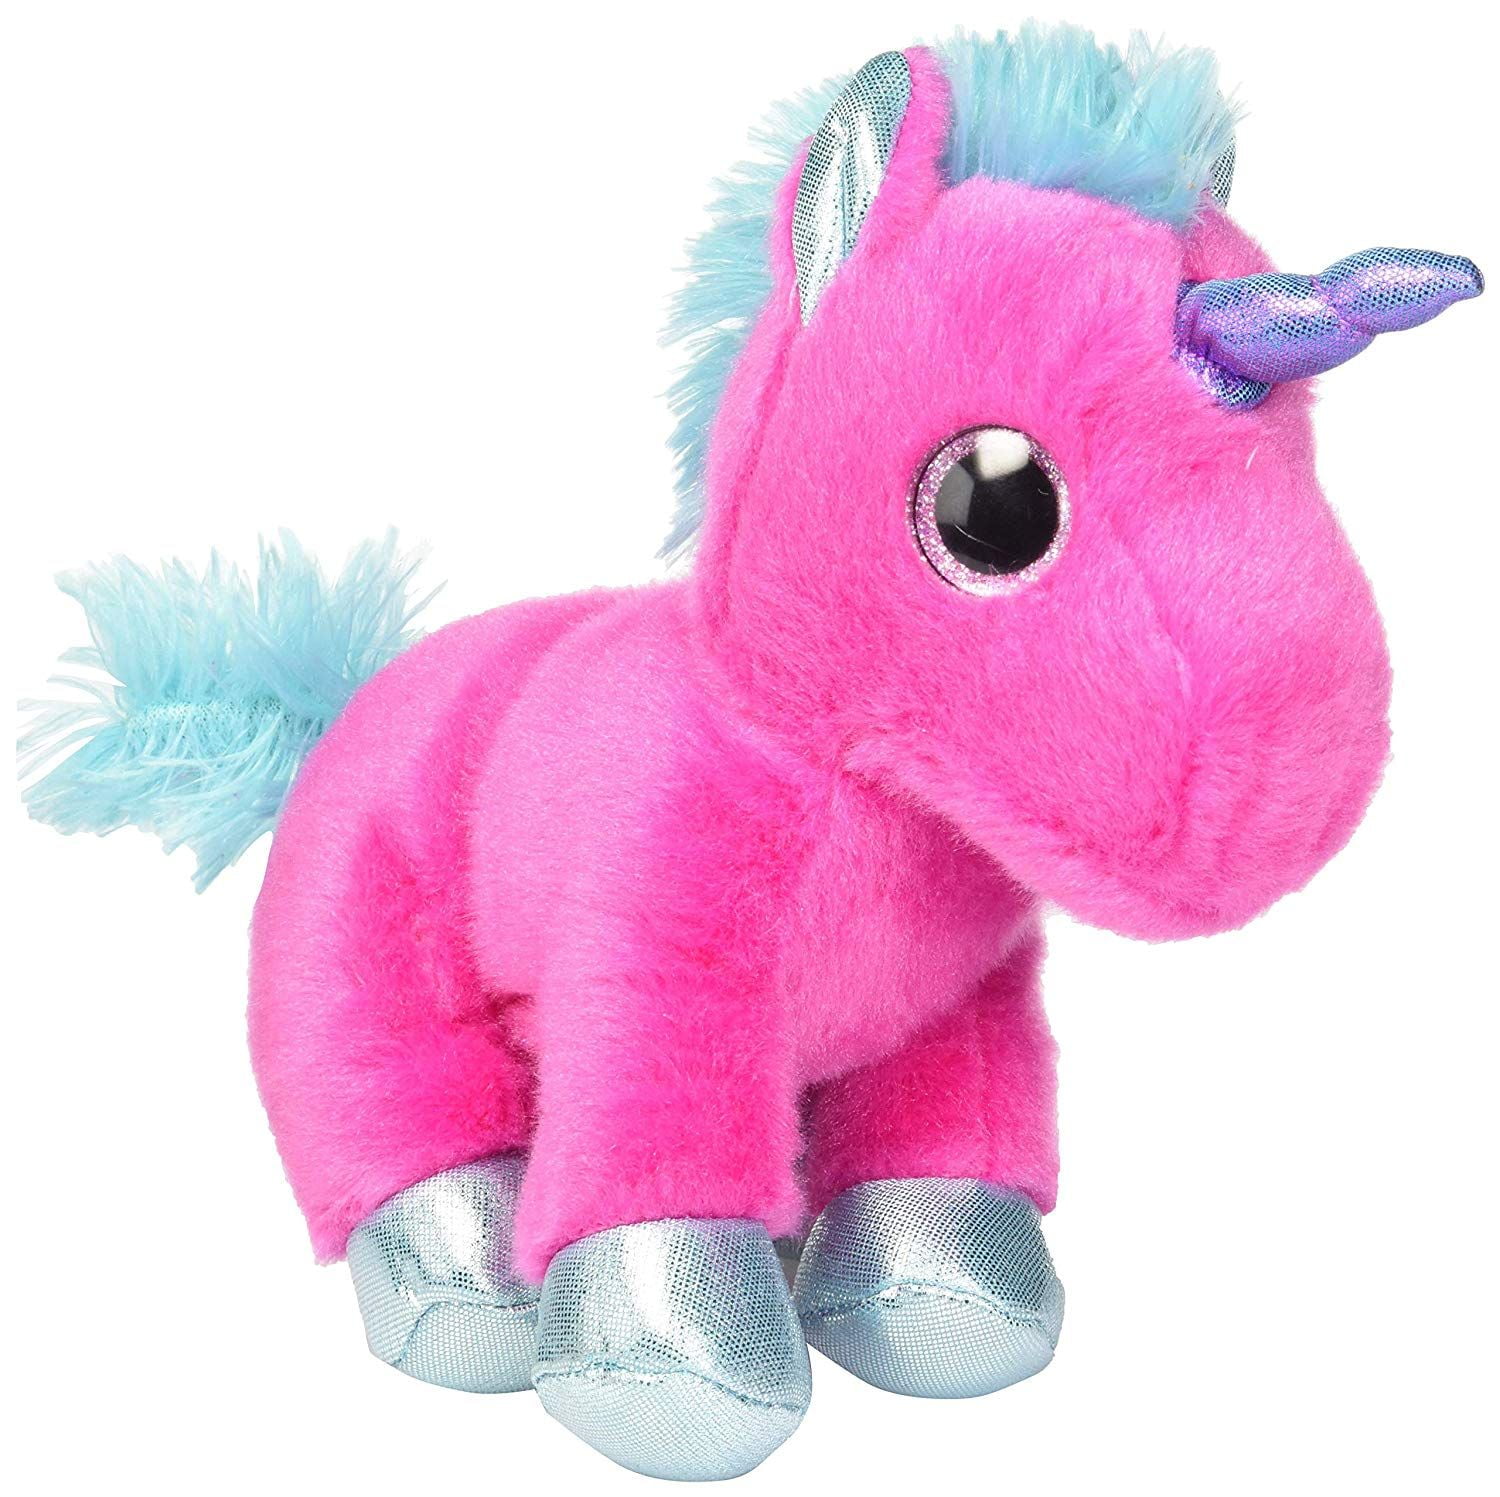 Aurora Sprinkles UNICORN 8" Plush Sparkle Tales Purple Stuffed Animal Toy NEW 